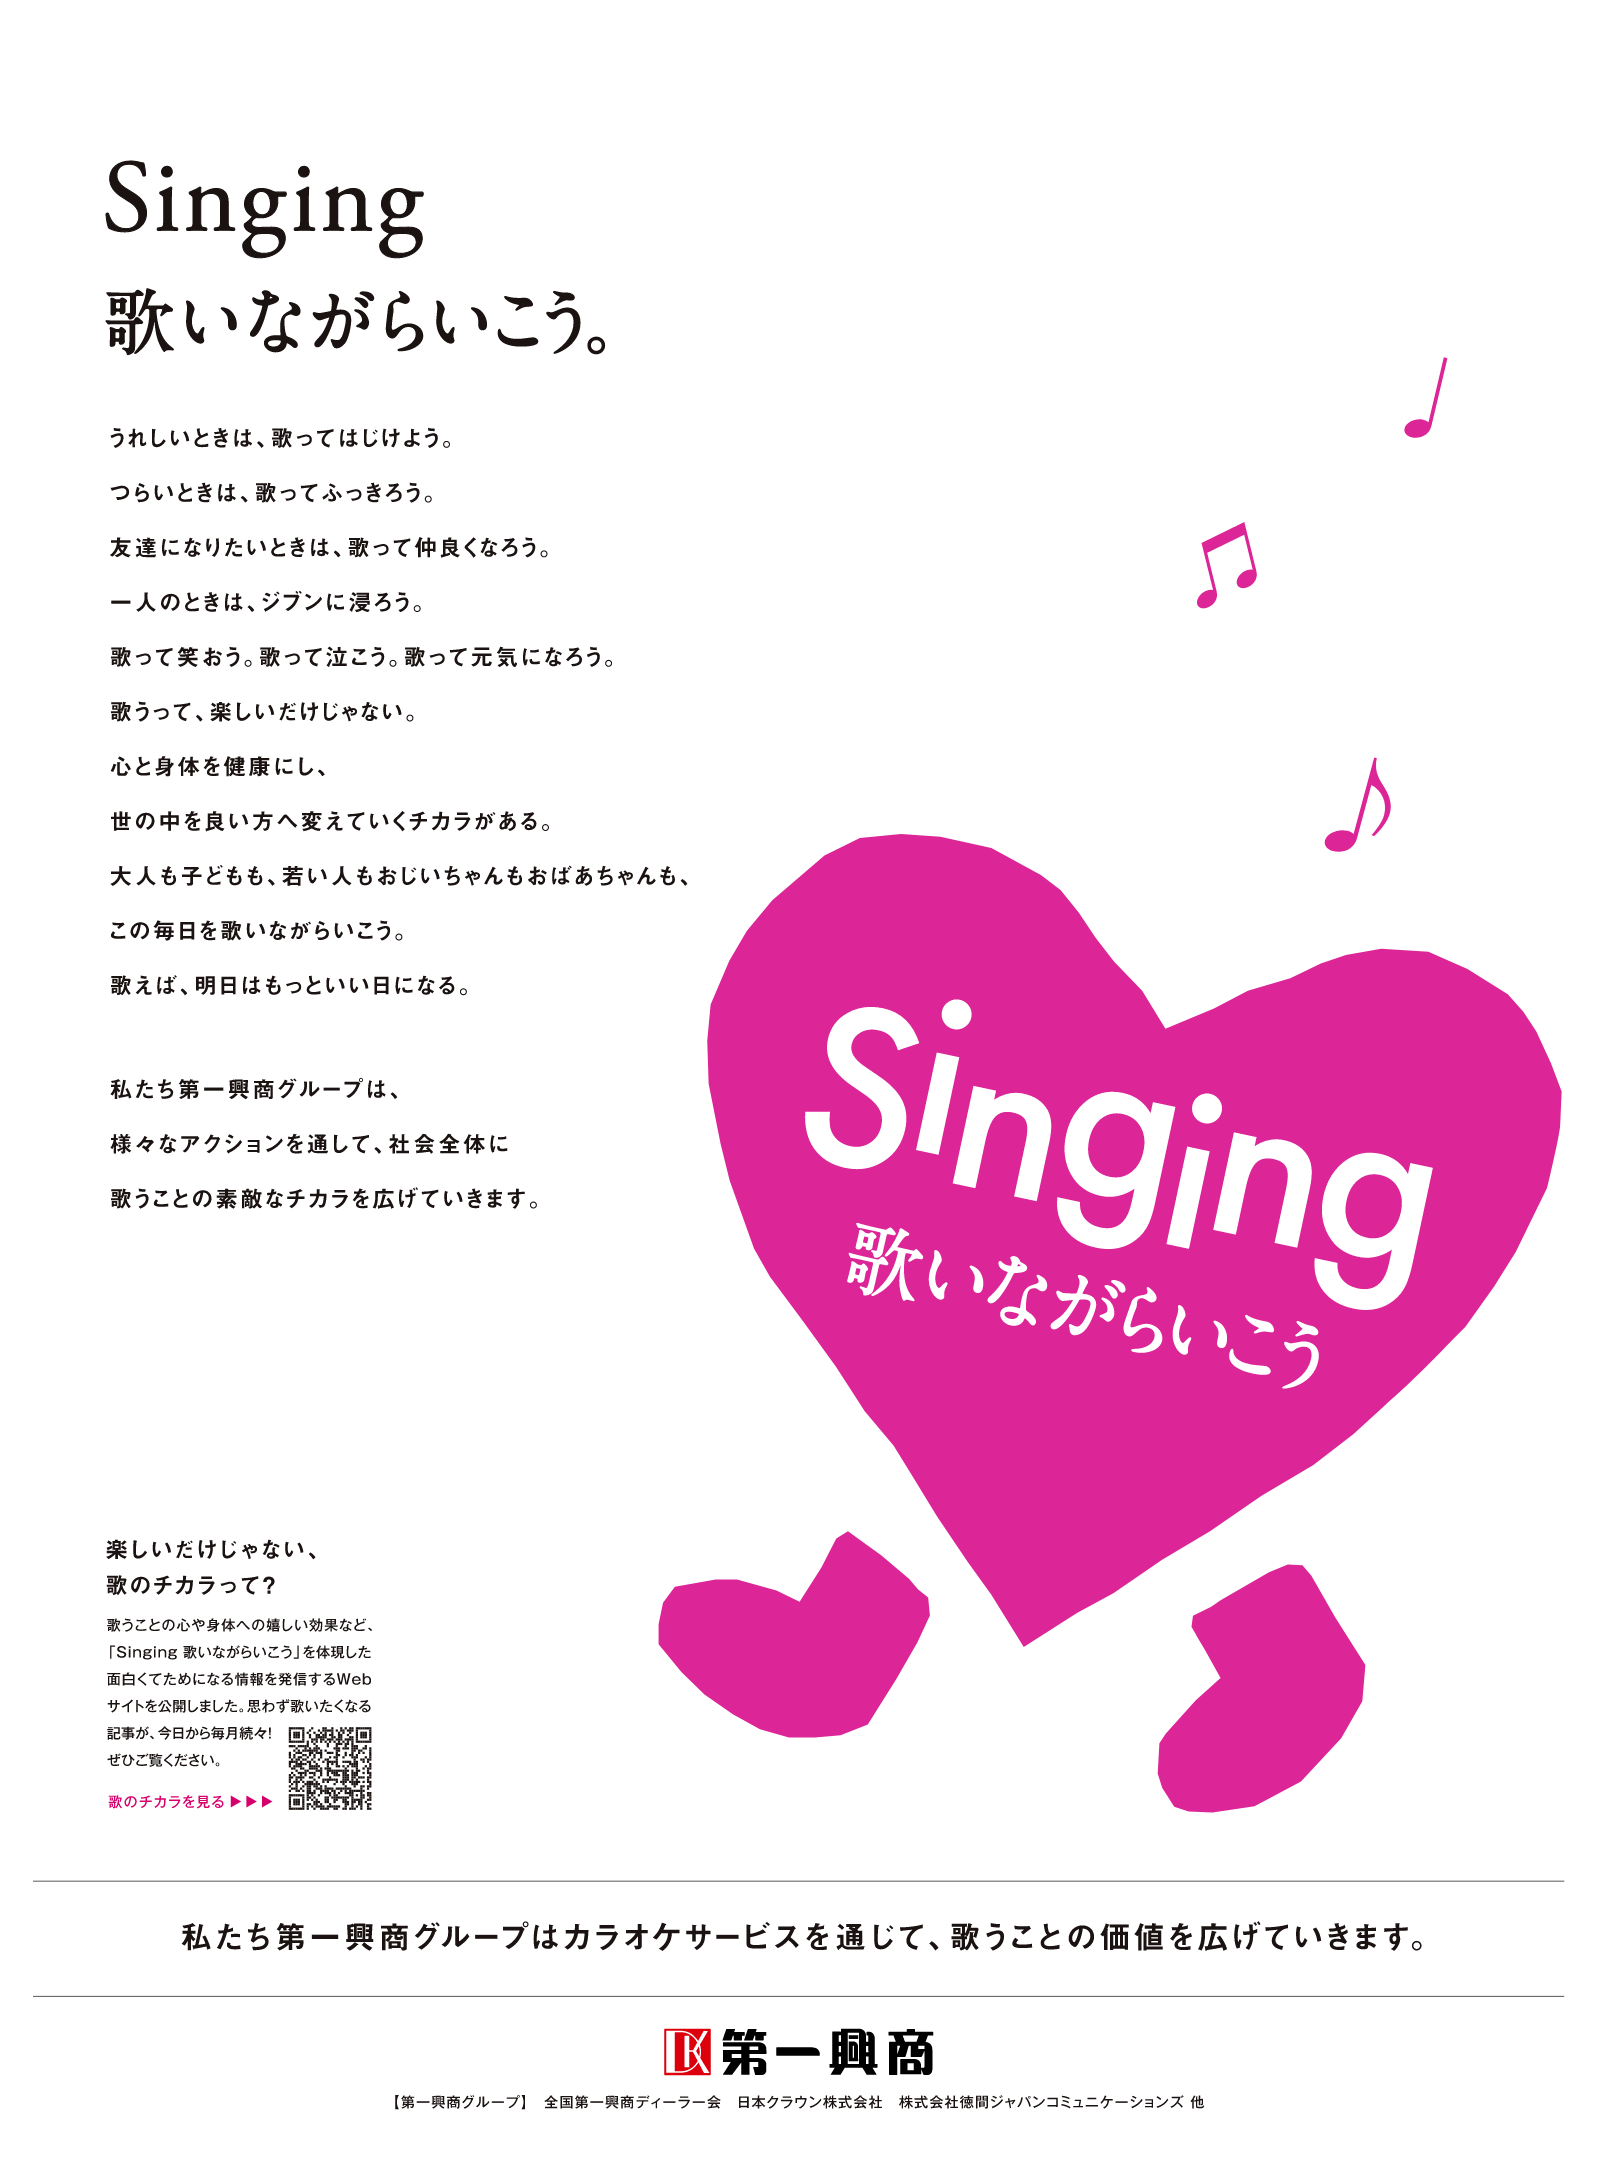 Singing 歌いながらいこう。